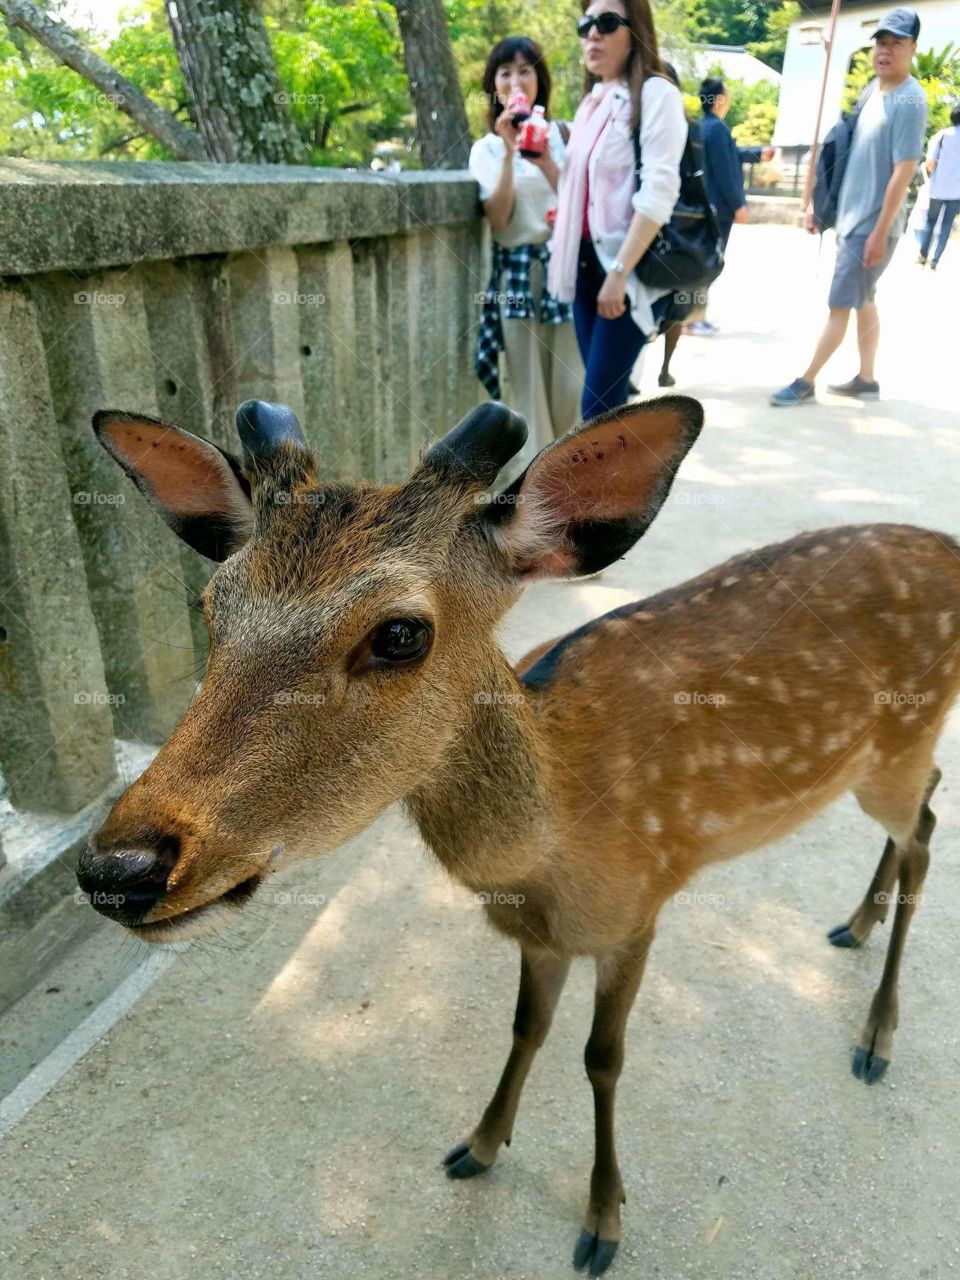 friendly deer